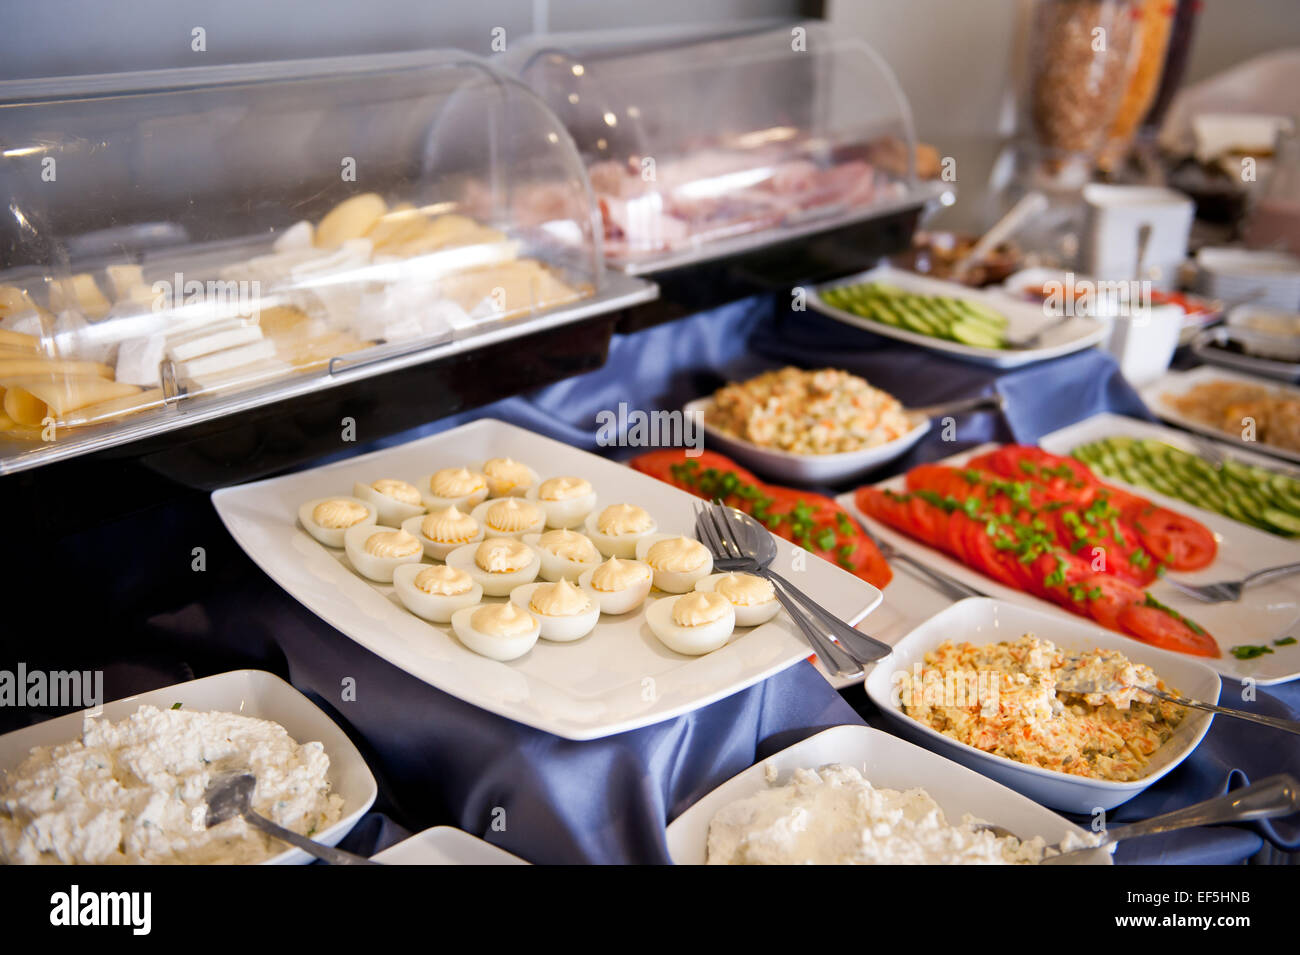 Smorgasbord svedese di tavola a buffet con piatti caldi e freddi Foto Stock